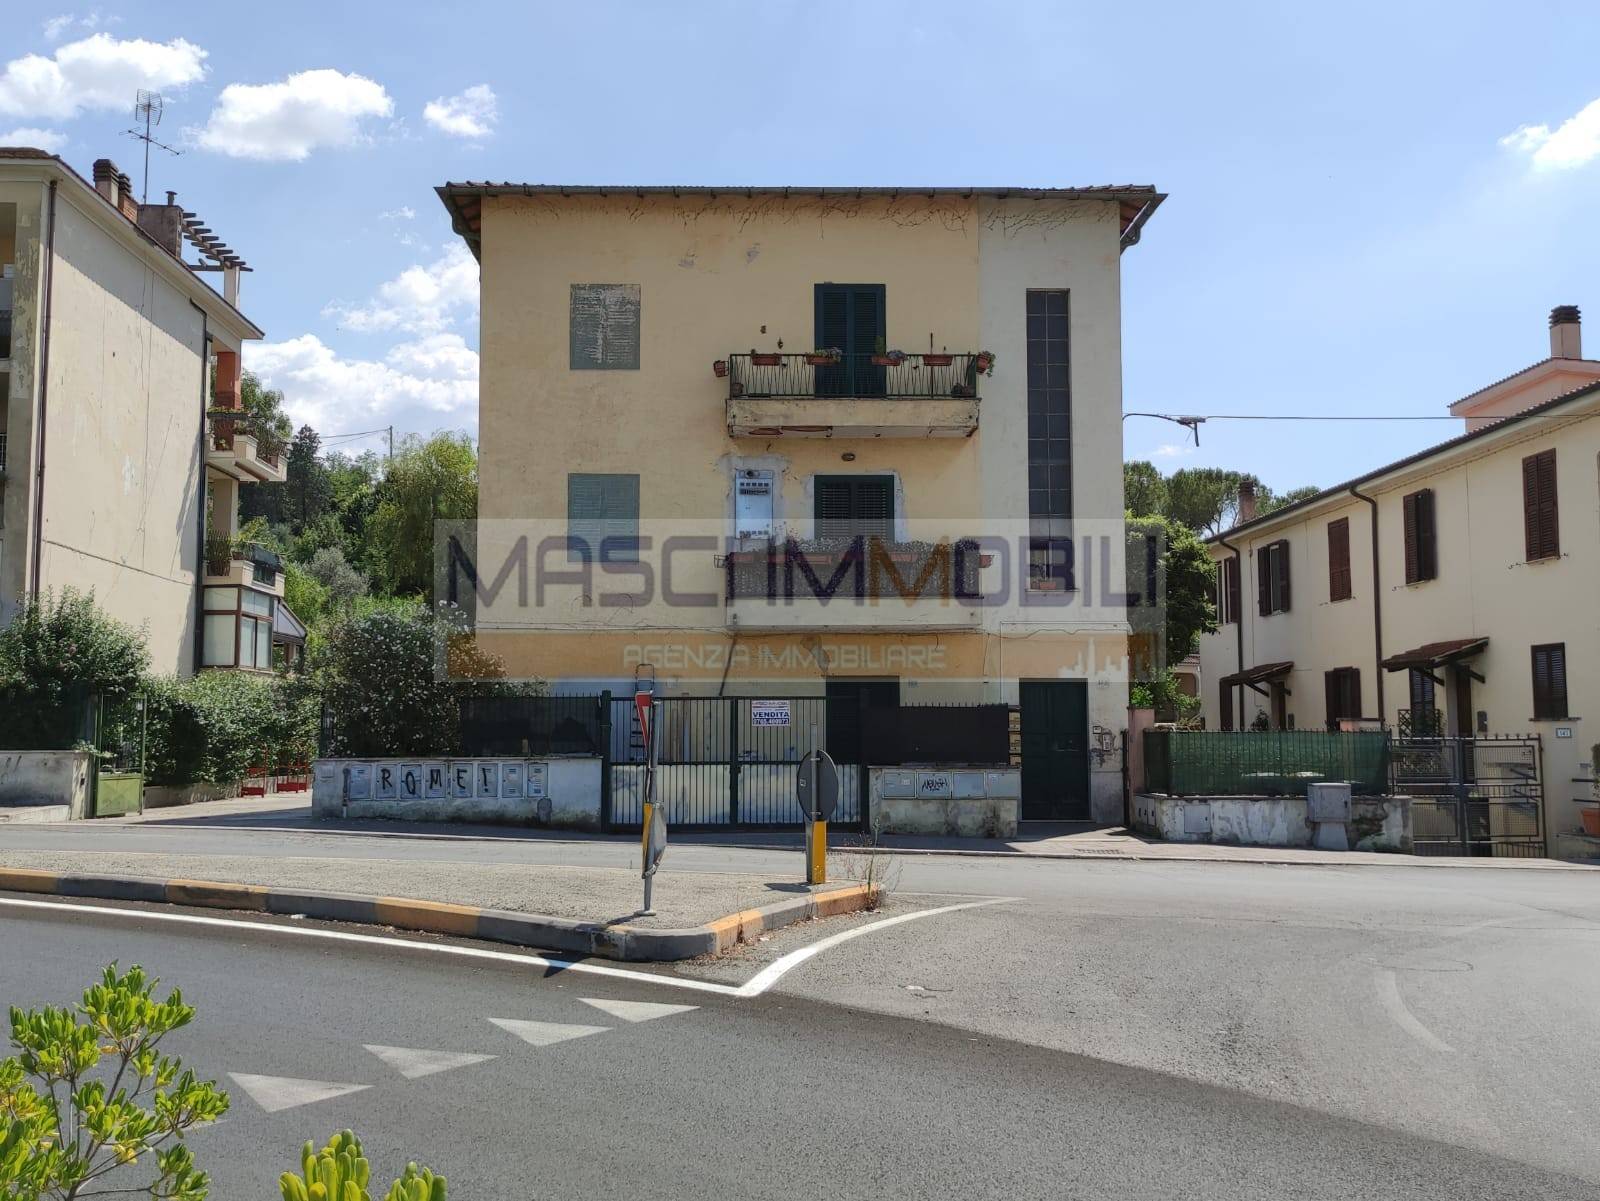 Appartamento in vendita a Monterotondo, 2 locali, zona Zona: Monterotondo Scalo, prezzo € 80.000 | CambioCasa.it